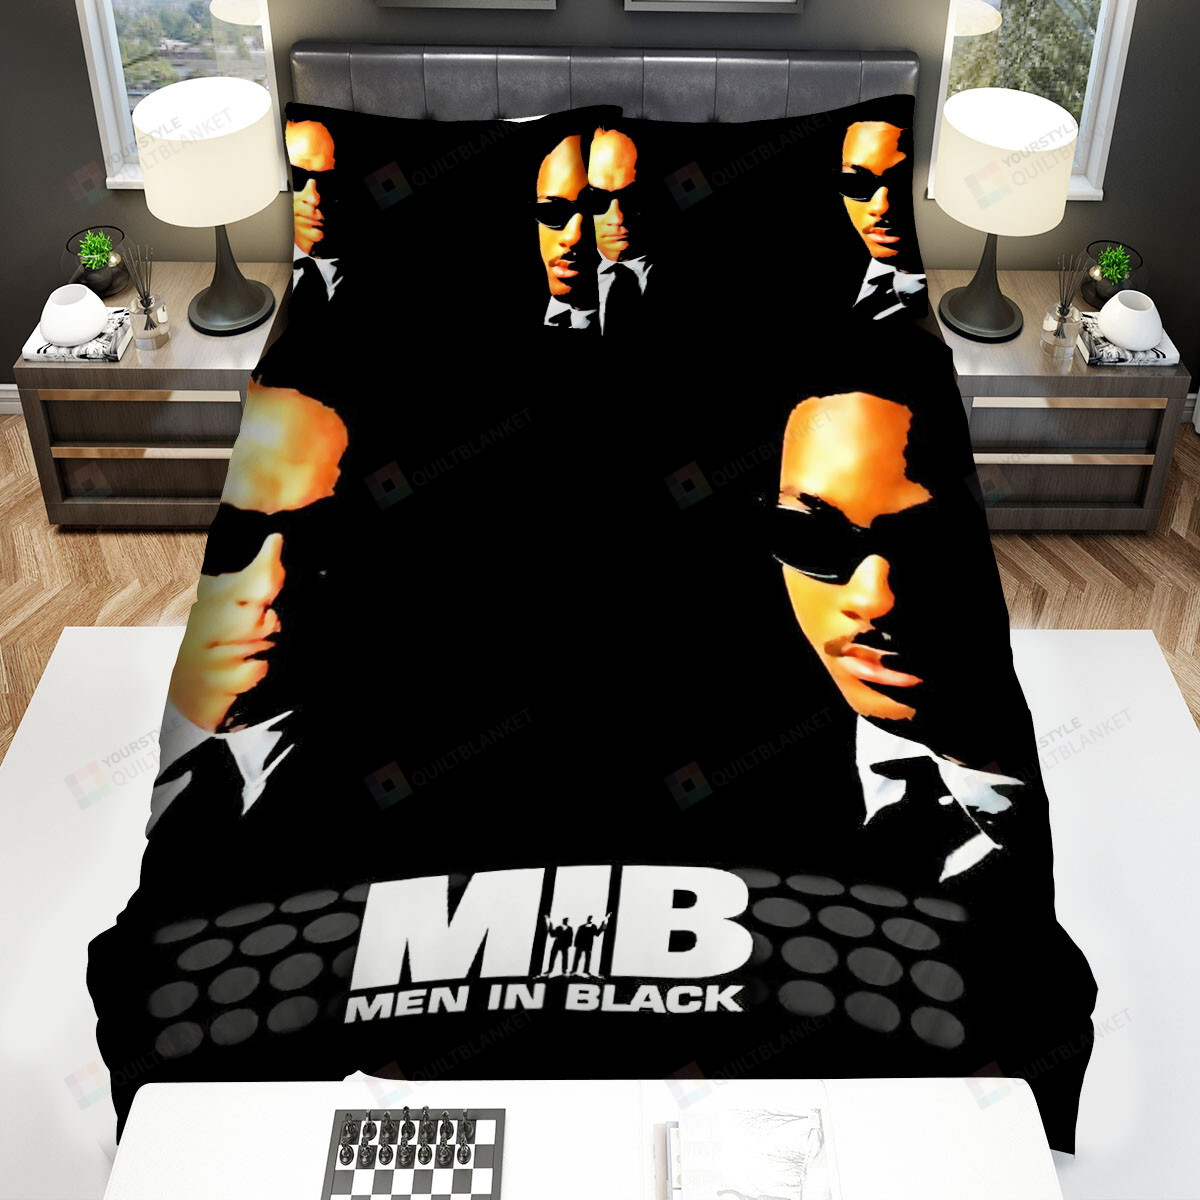 Men In Black (1997) Movie Poster 2 Bed Sheets Spread Comforter Duvet Cover Bedding Sets